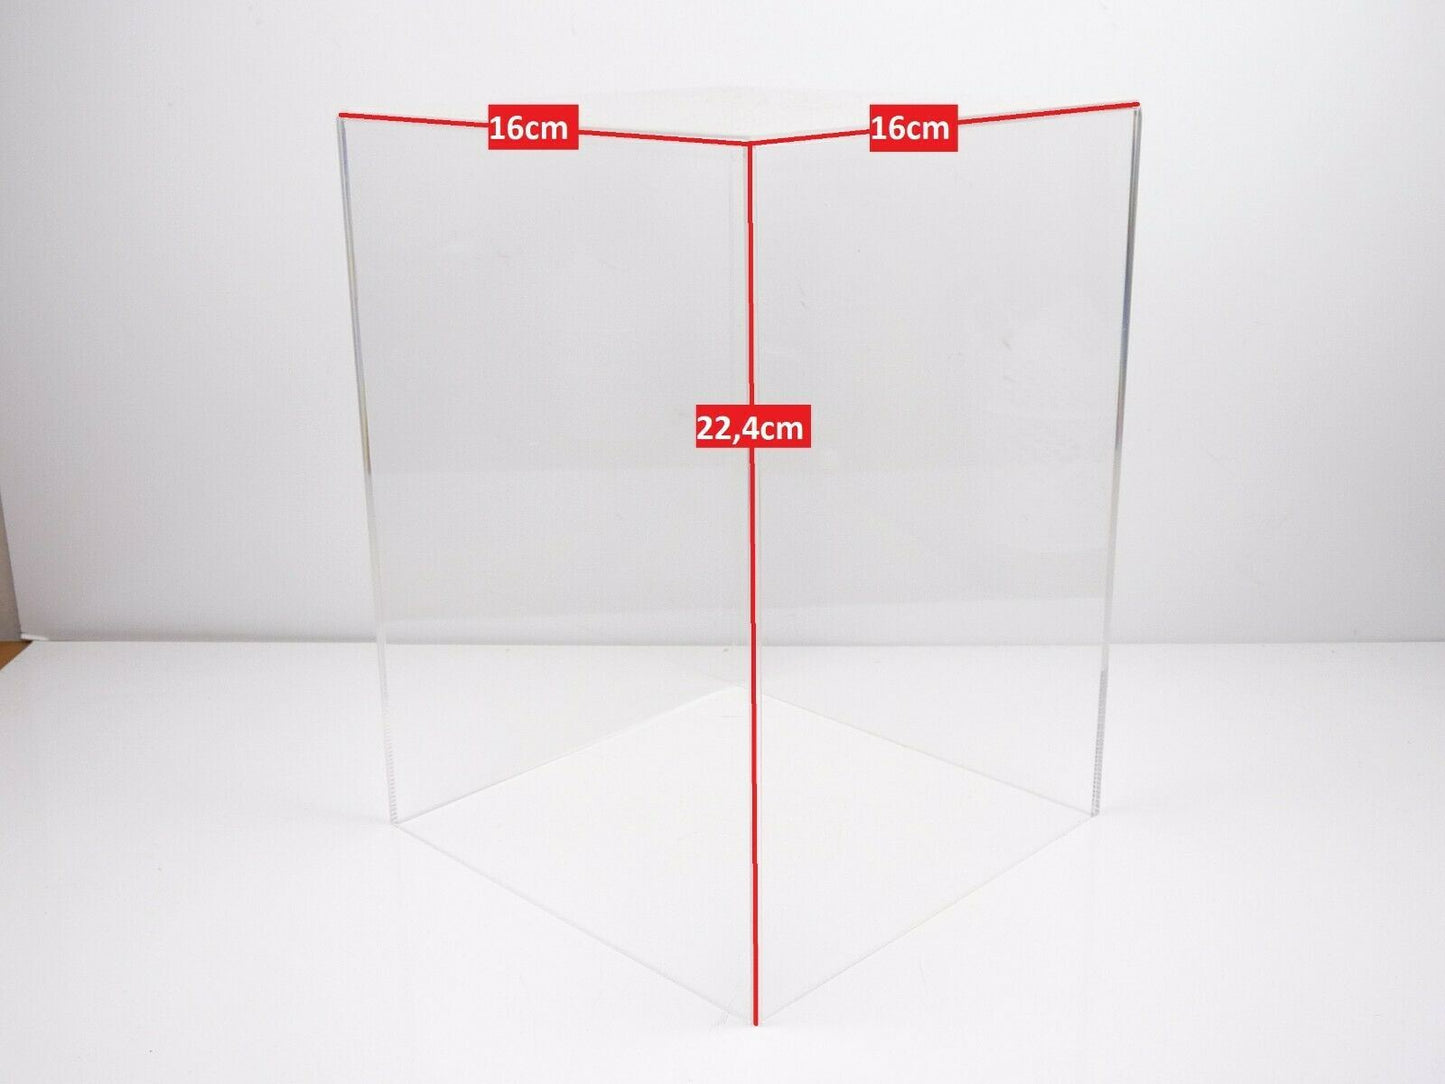 1 Cloche (sans base) vitrine plexi vide neuves carré 16 cm x 16cm hauteur 22,4cm